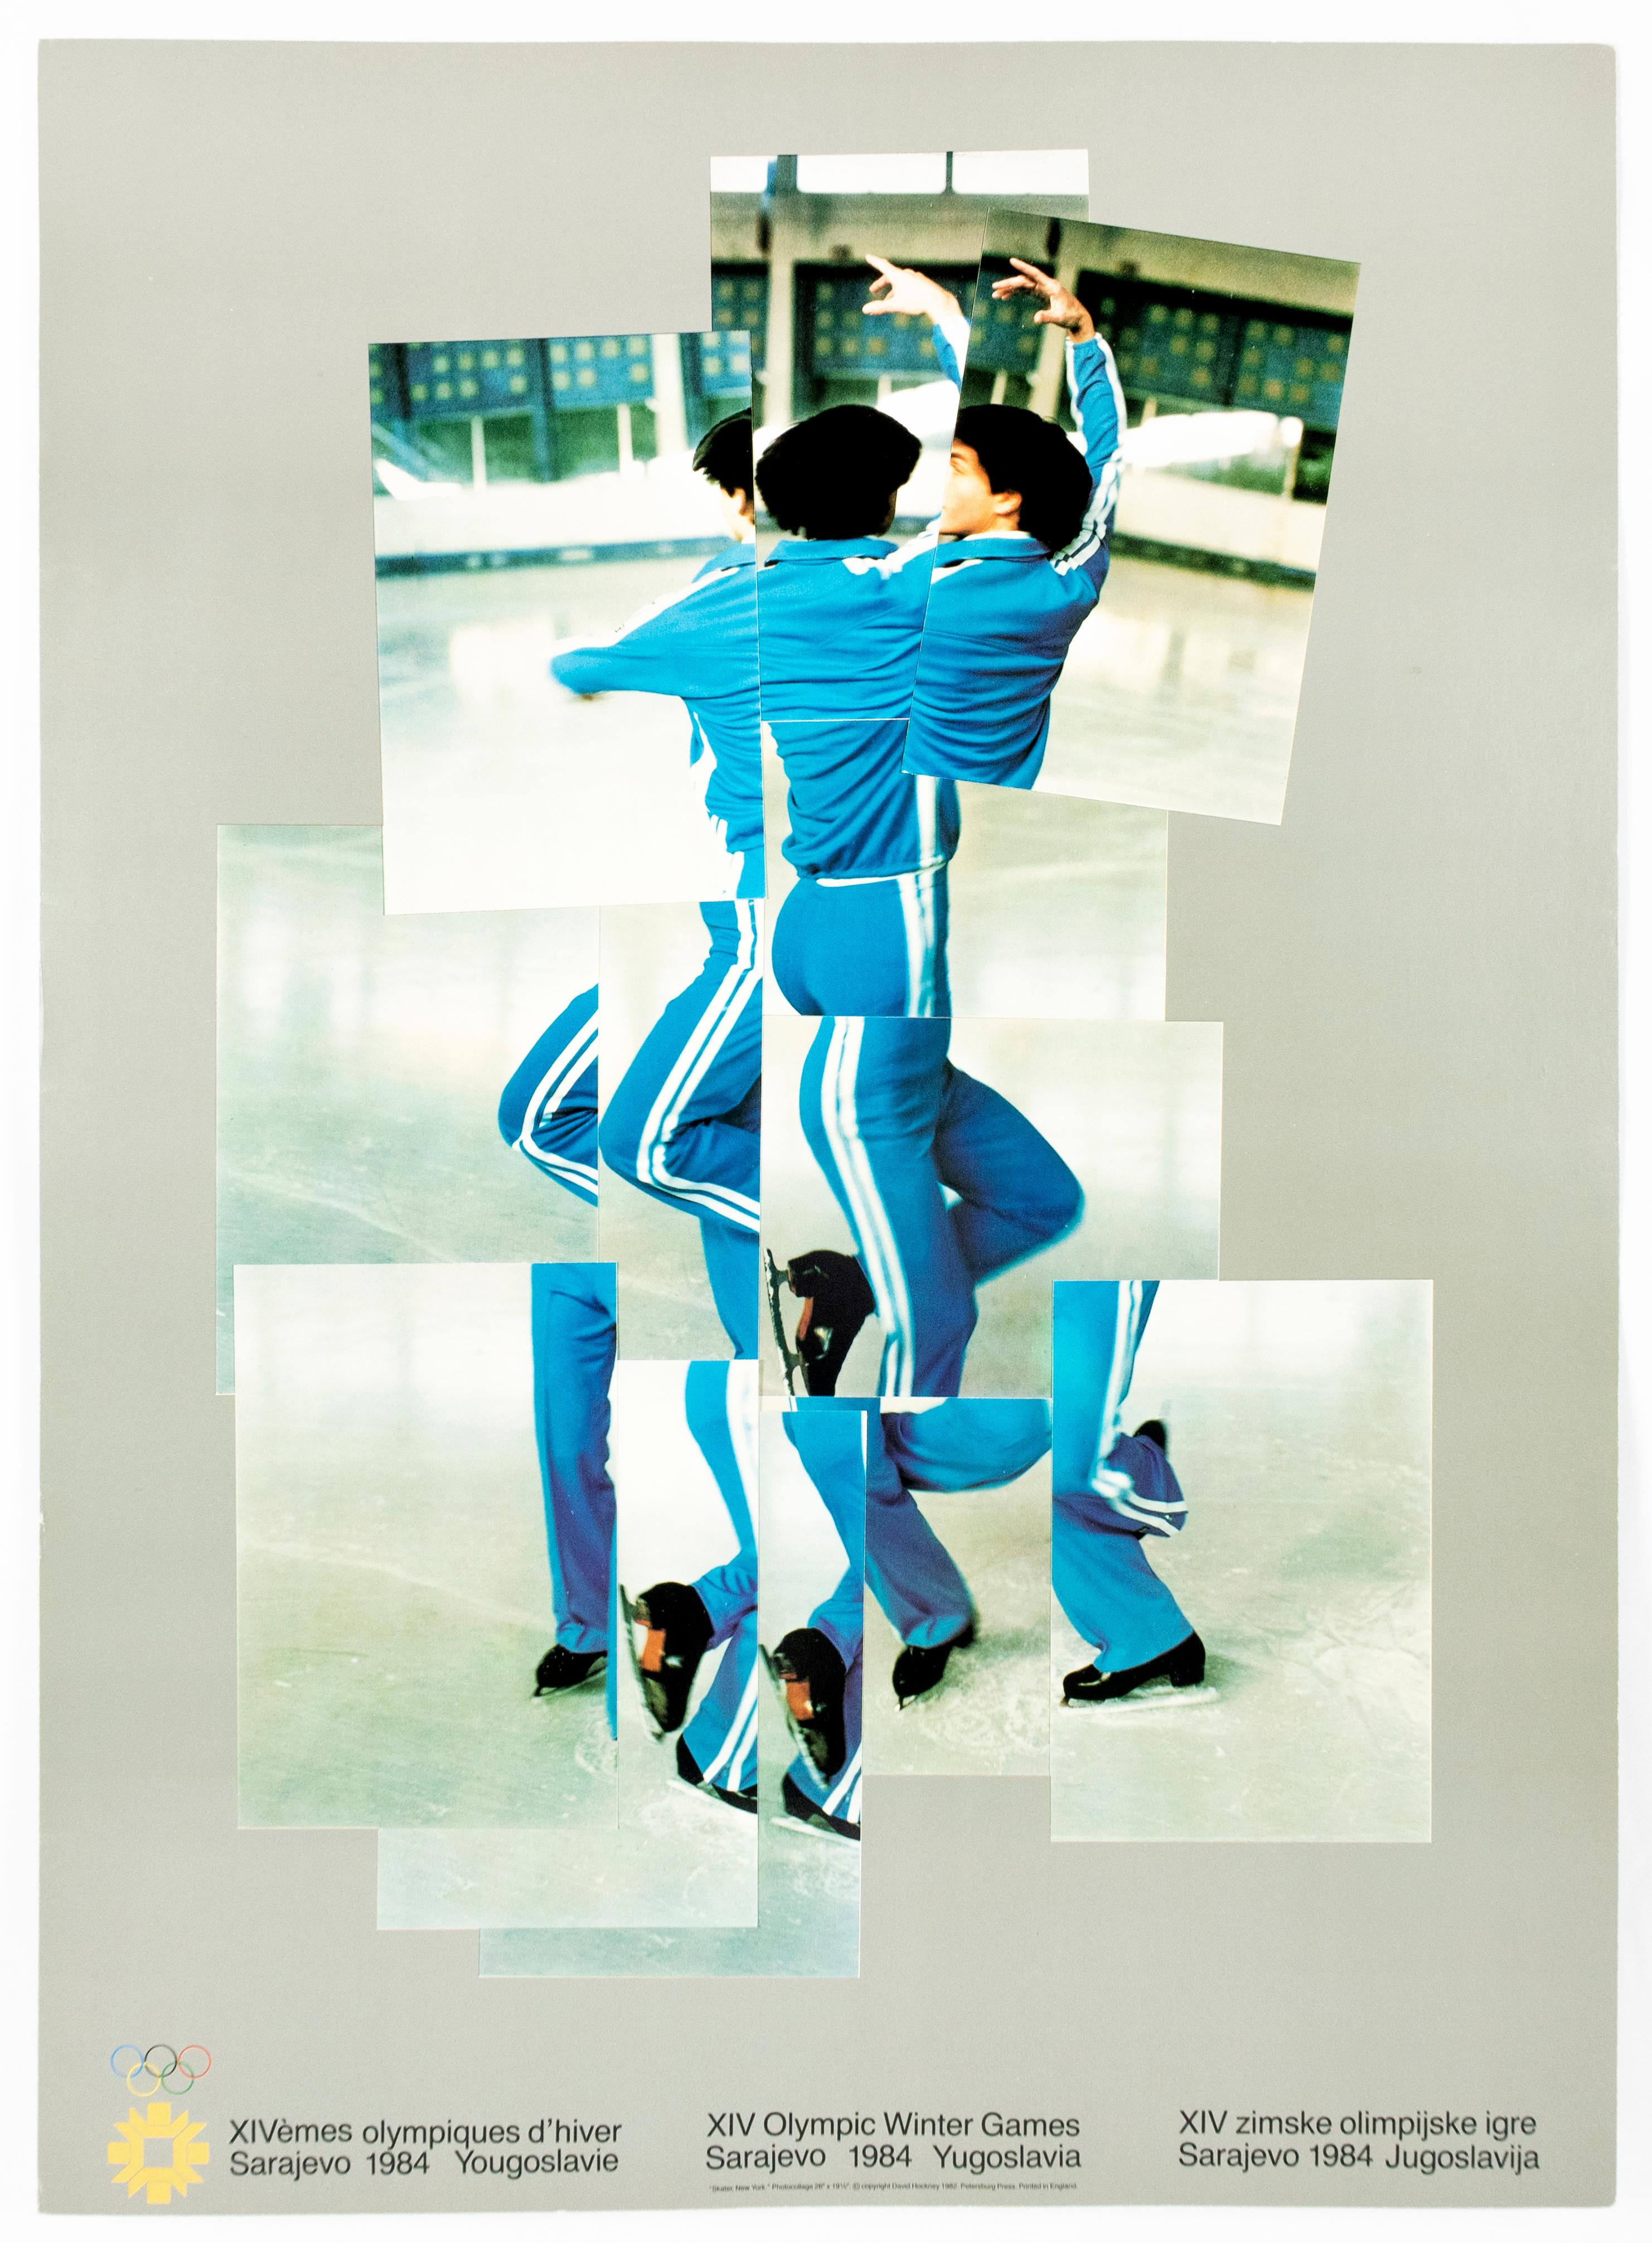 Vintage-Poster von David Hockney, XIV. Olympische Winterspiele 1984, Skater